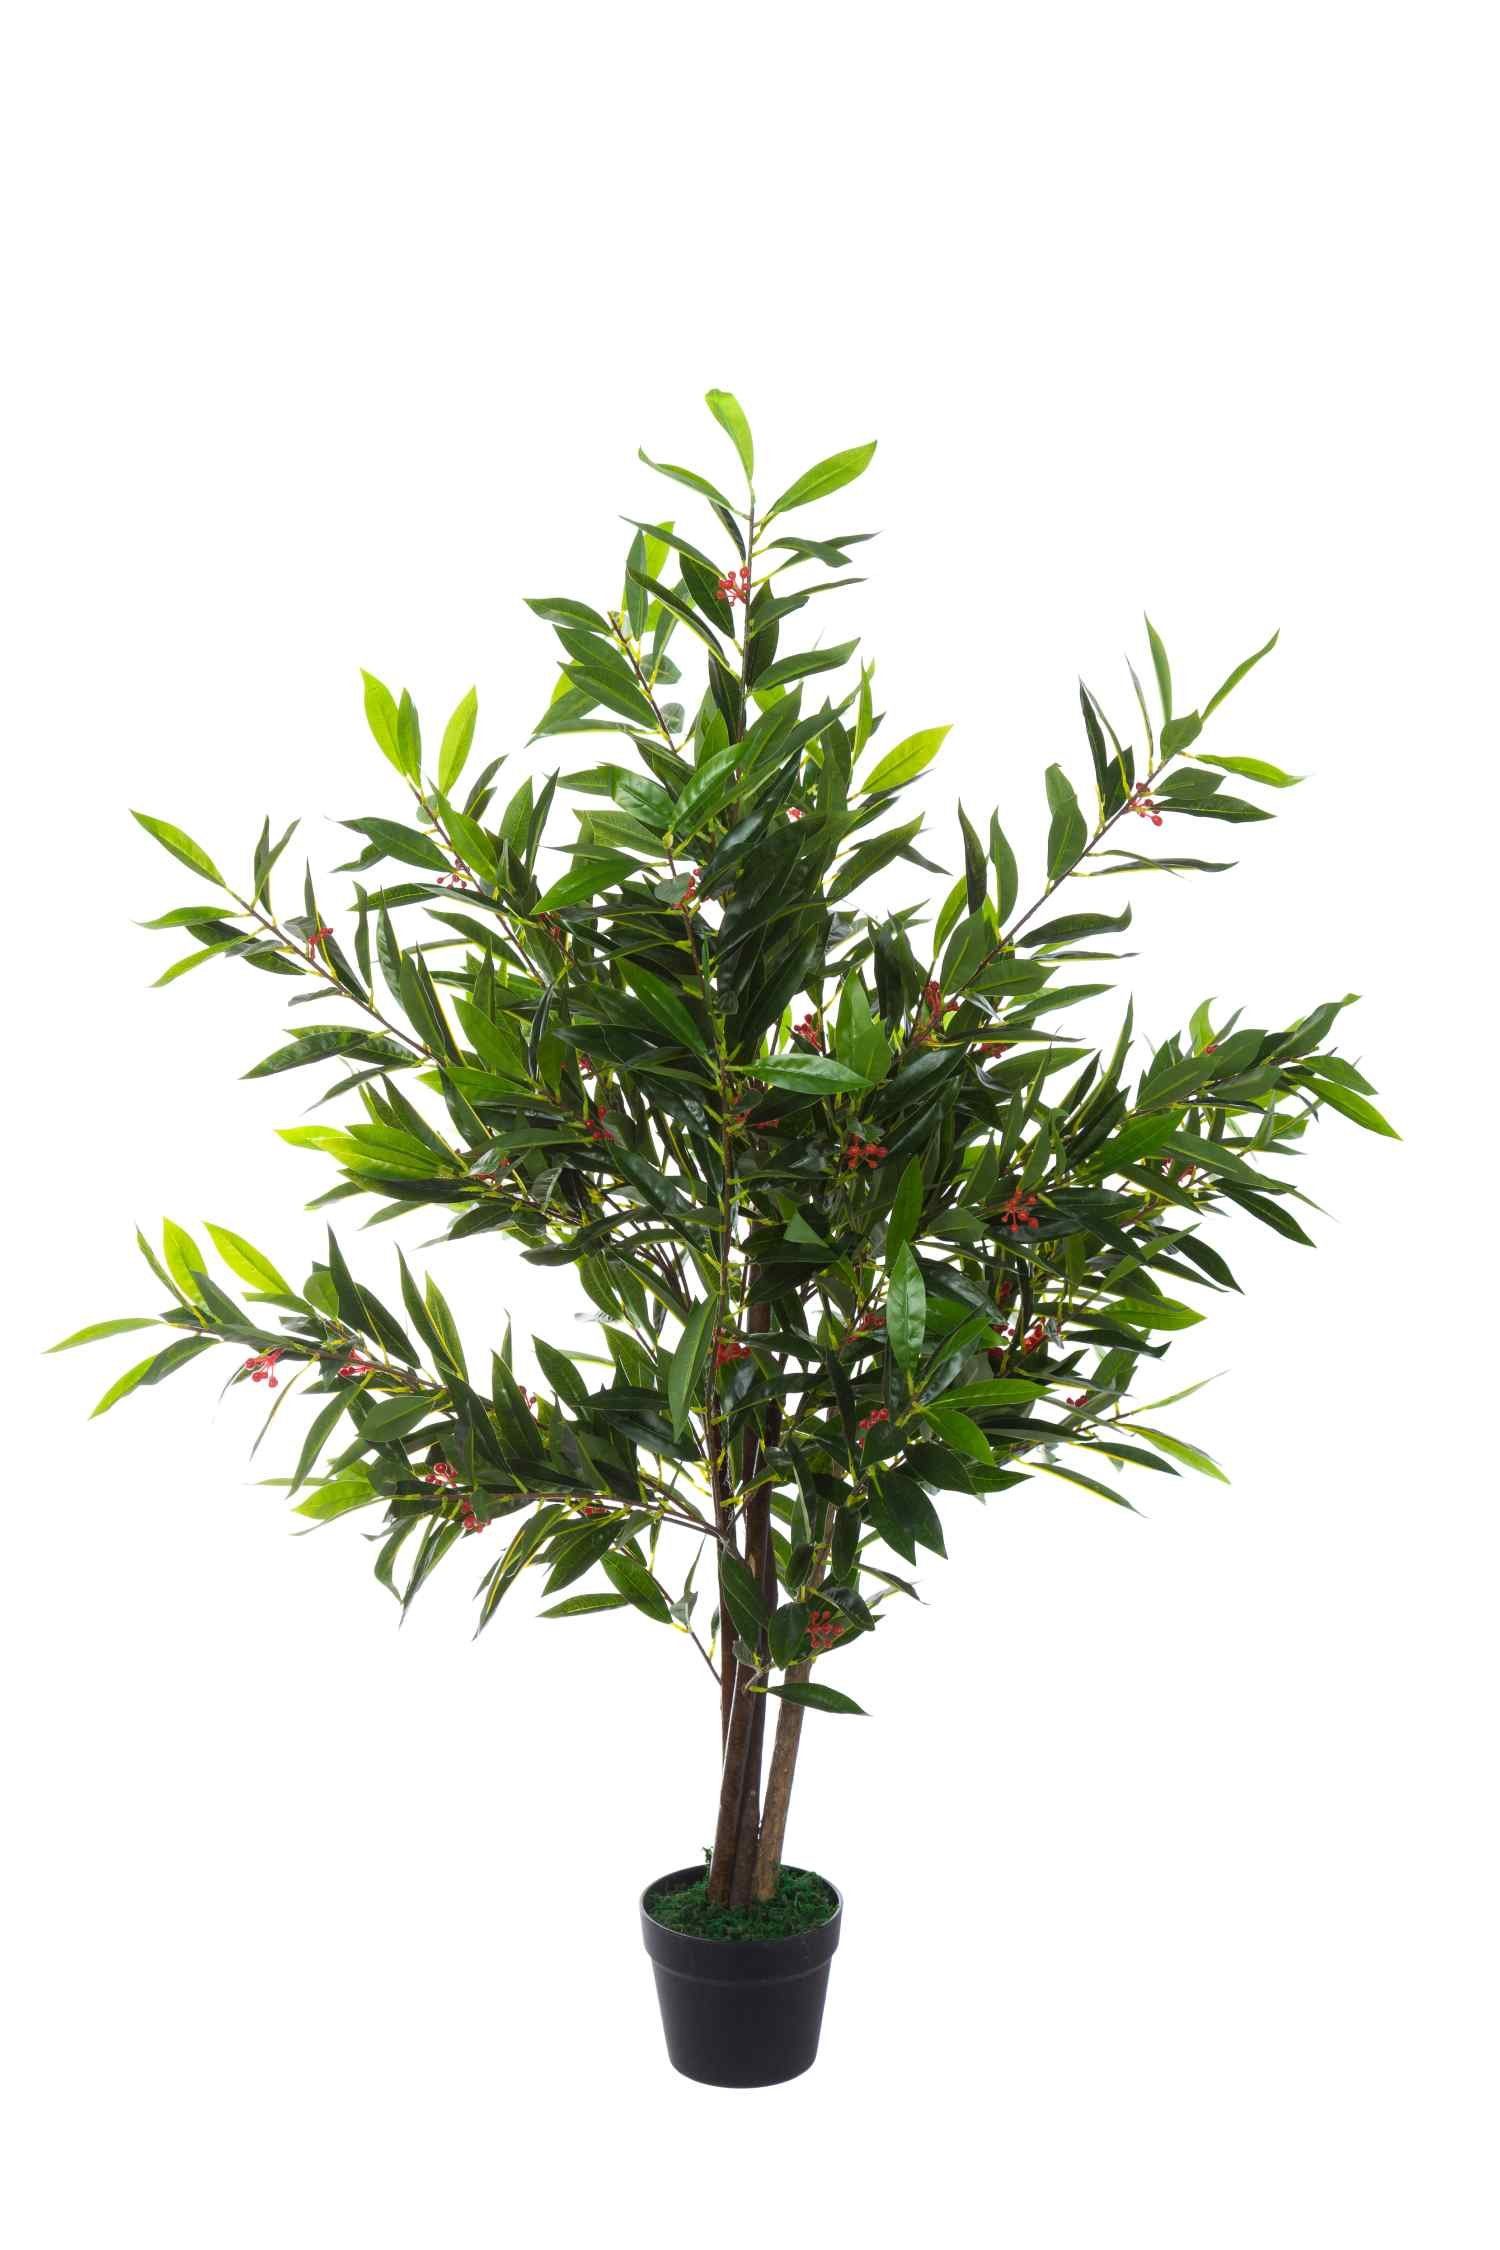 BIRENDY Dekobaum künstliche Kunstpflanze 120cm XXL Große Baum Olivenbaum Blüte in JWS2060-2